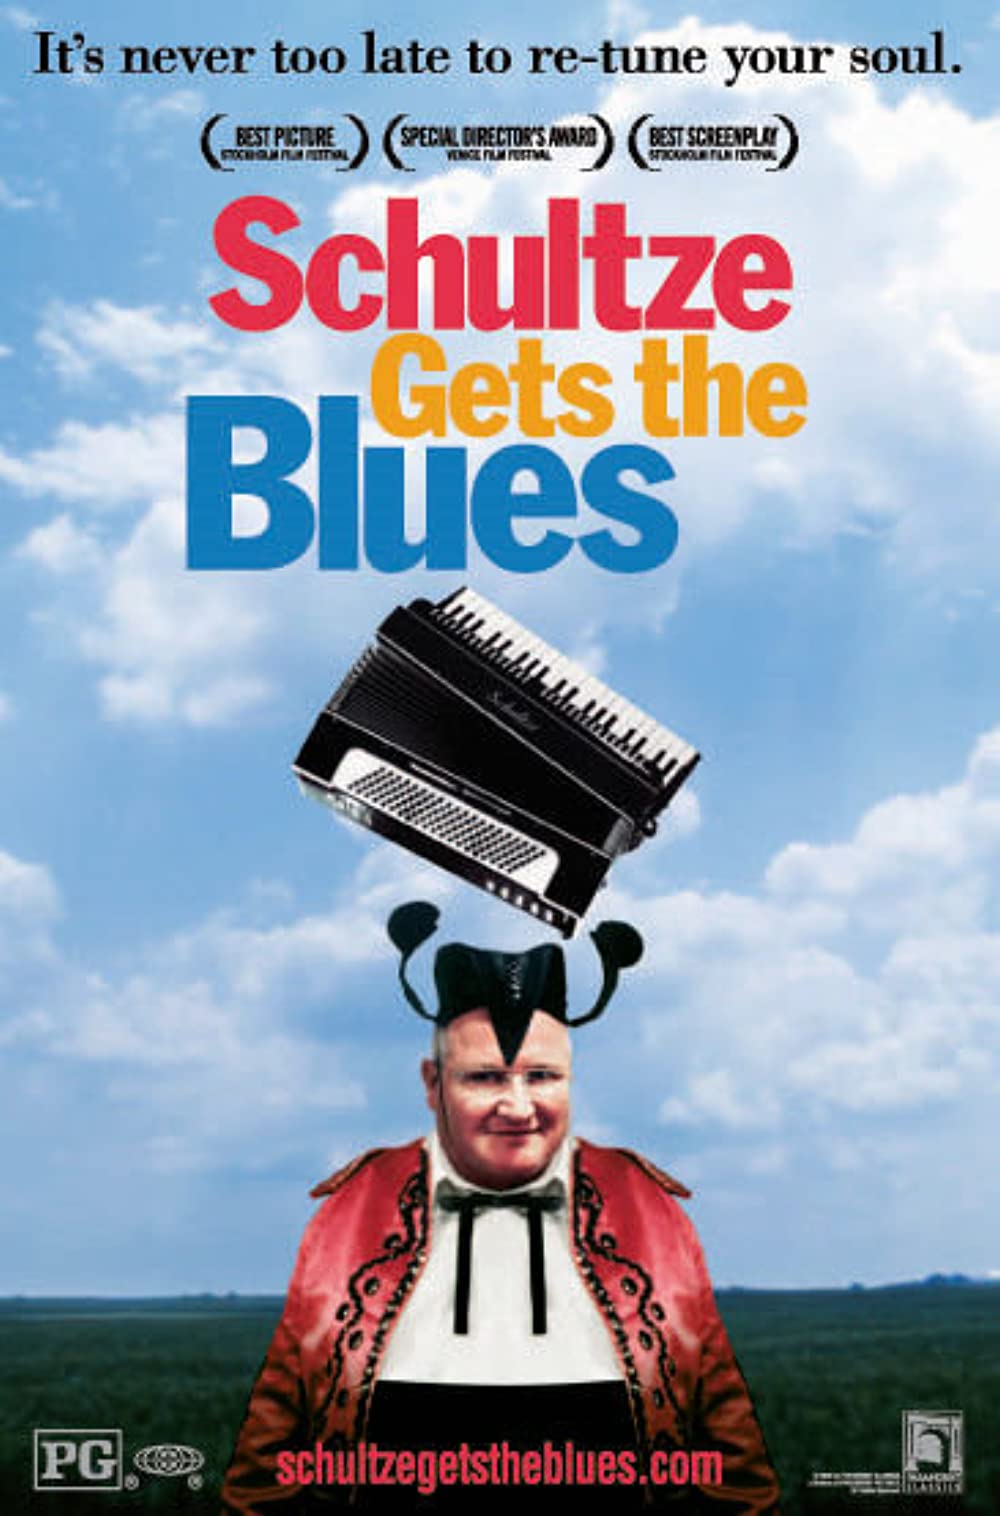 Filmbeschreibung zu Schultze Gets the Blues